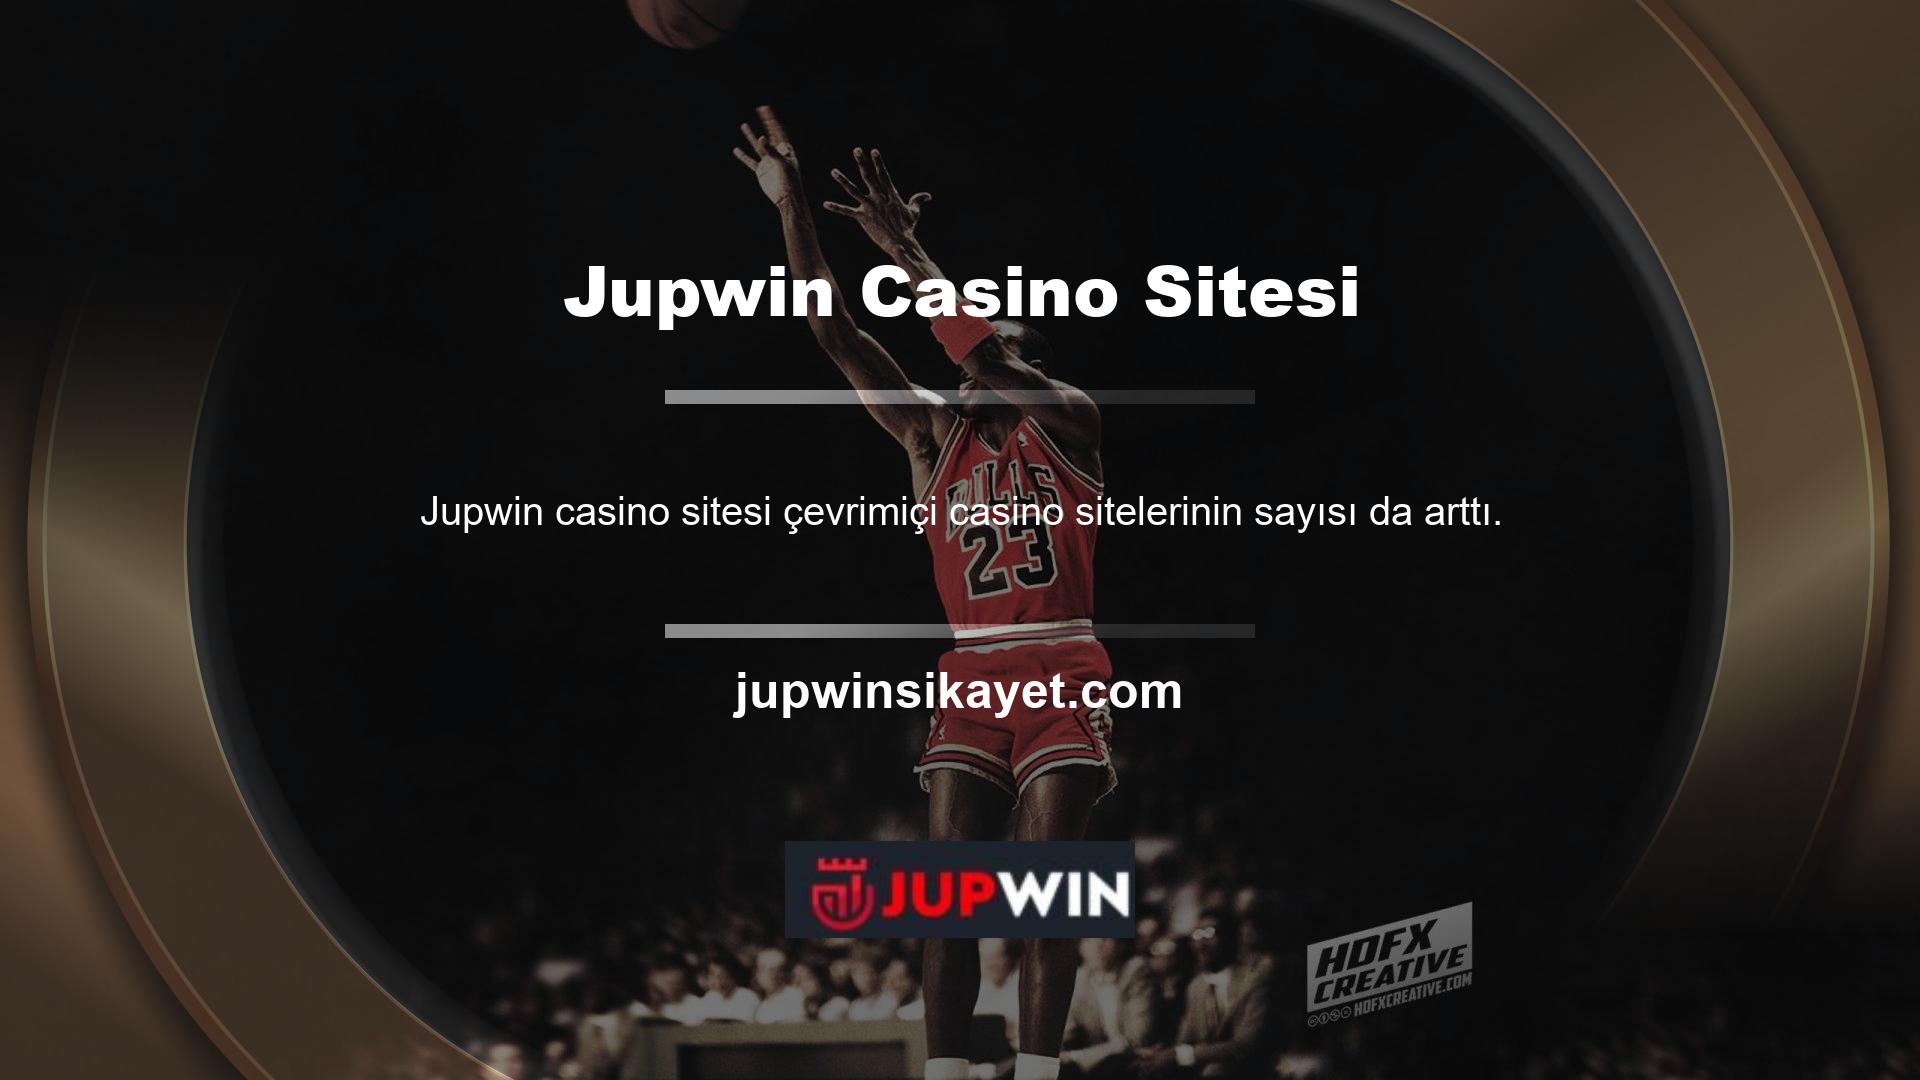 Kullanıcılar arasında en popüler bahis platformu olan Jupwin, şikayetler üzerine sorgulanmaya başlandı